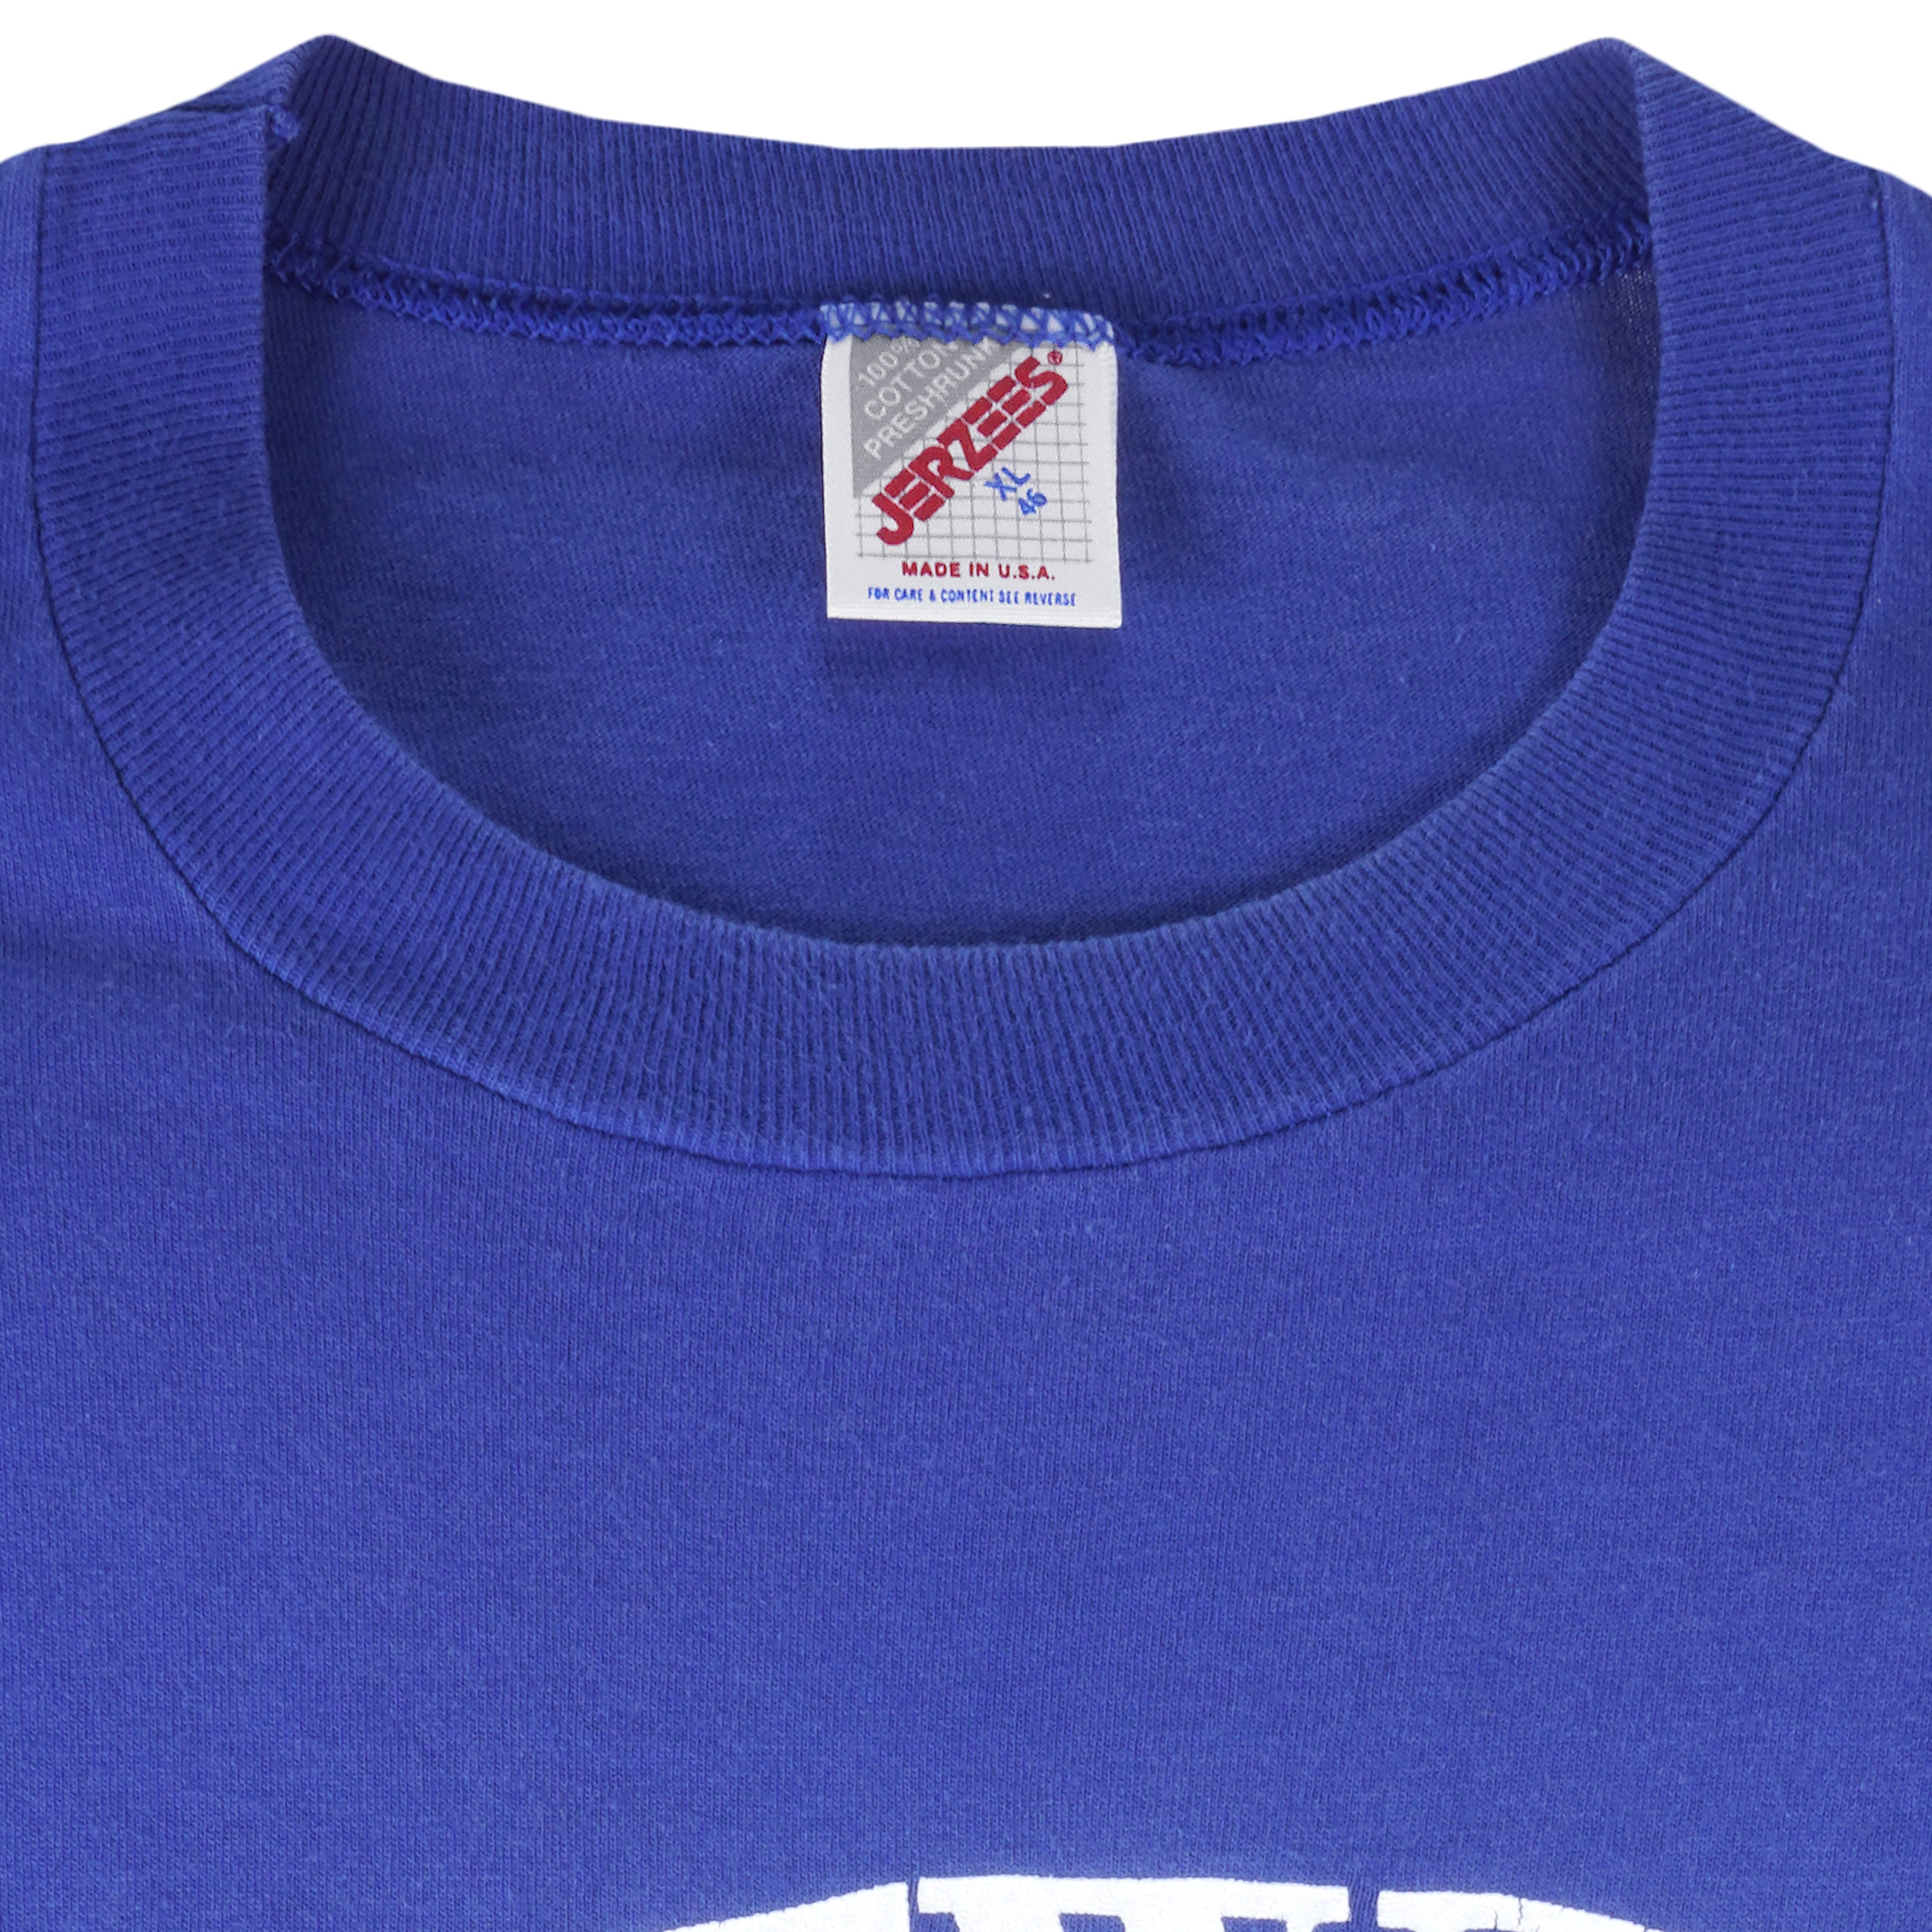 MLB Chicago White Sox Baseball Ballpark Jerzees Navy Blue T Shirt